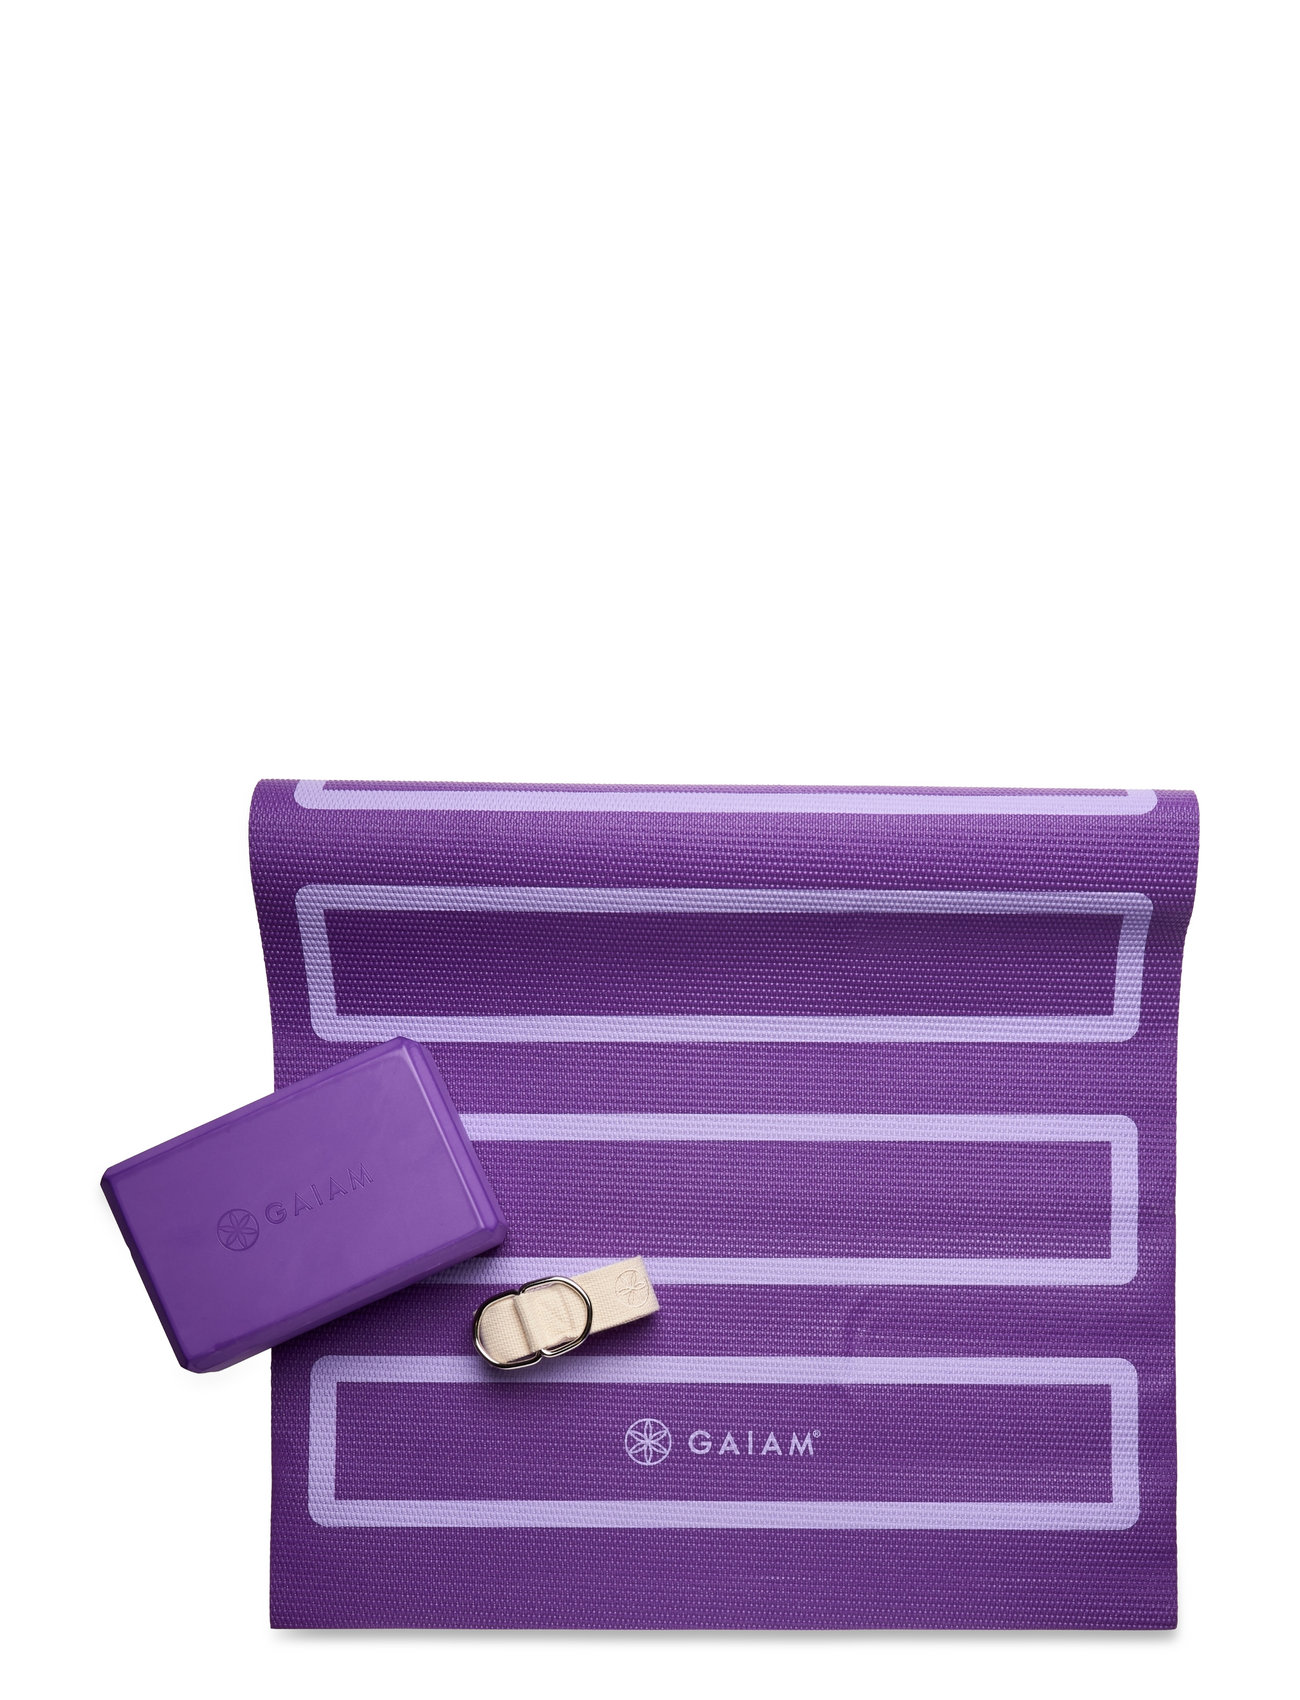 GAIAM Yoga Beginners Kit 4mm Mat Brick & Strap 2 Colors NEW